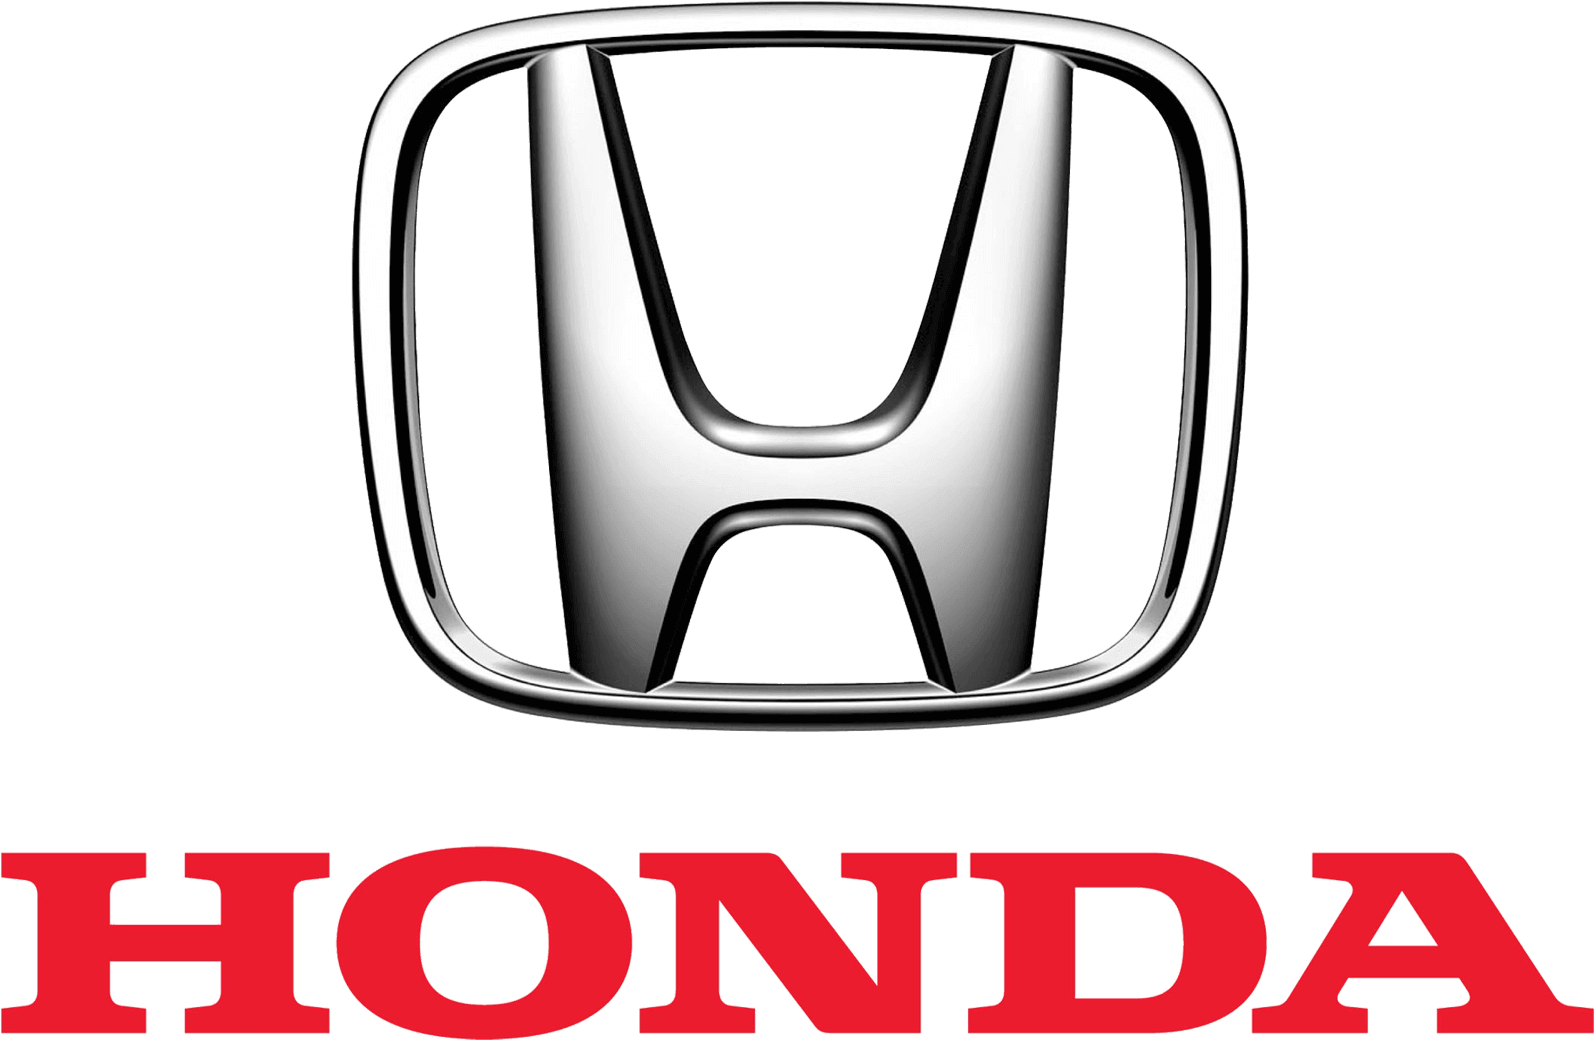 Honda company